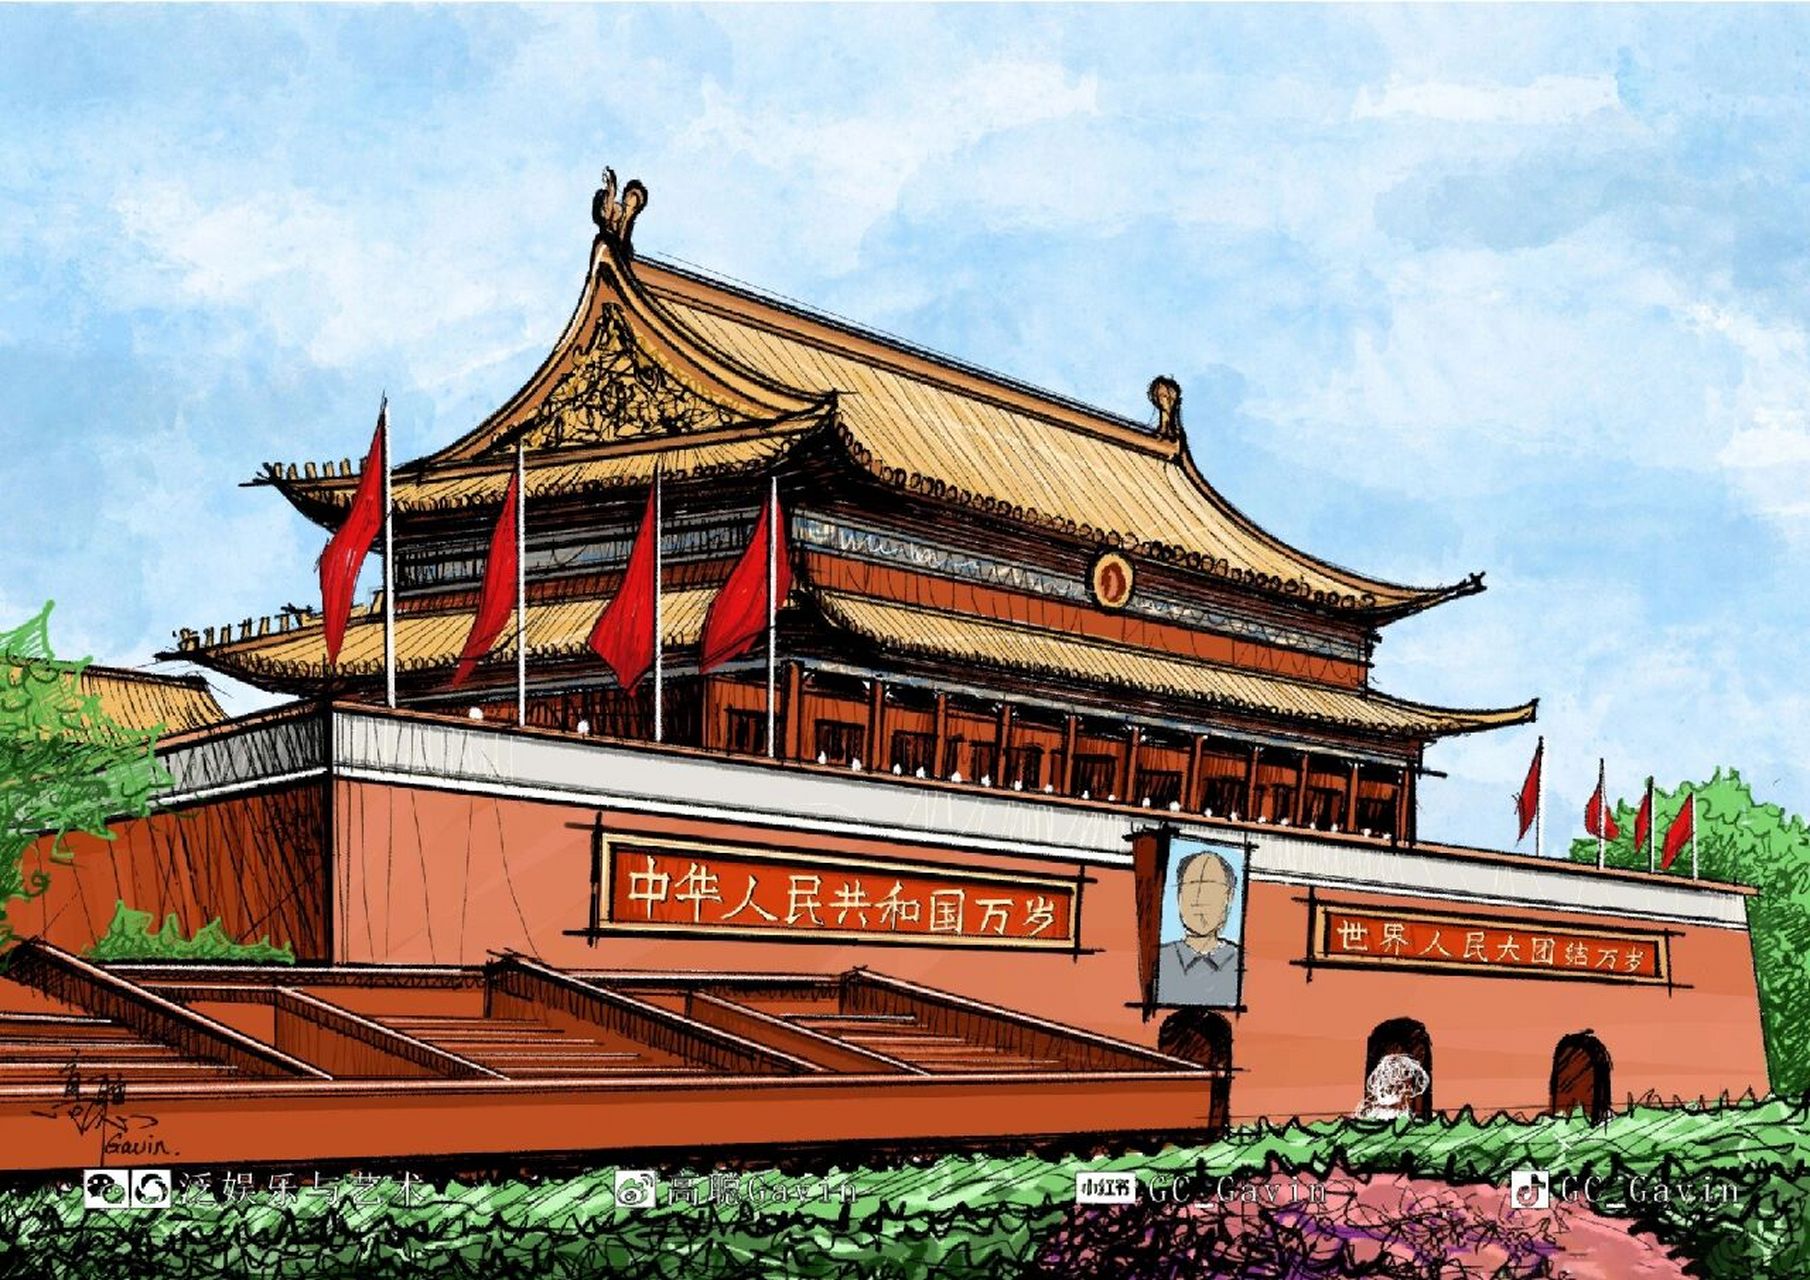 手绘北京61天安门城楼         天安门,位于中华人民共和国首都北京